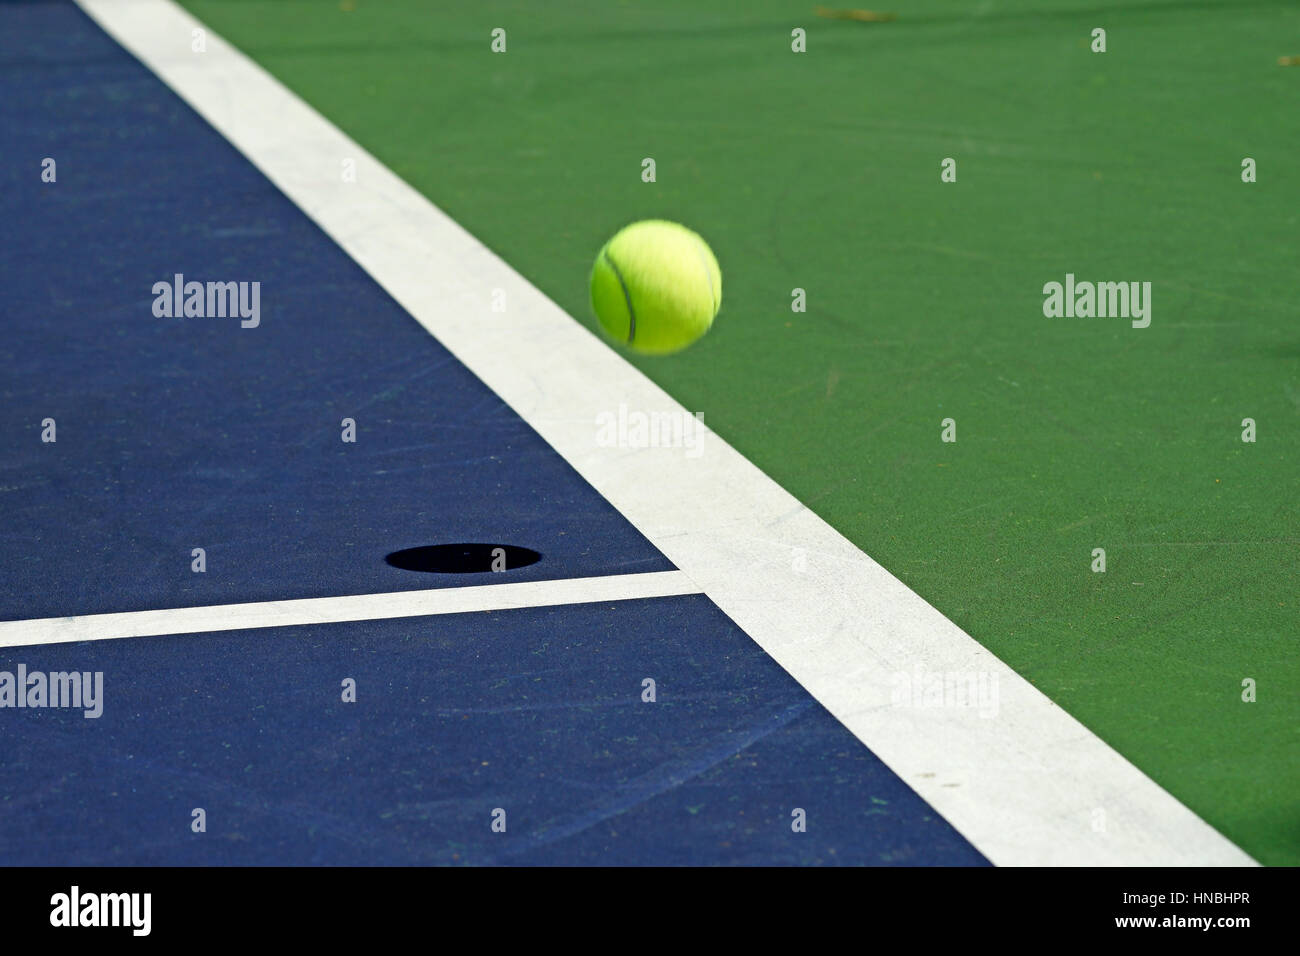 Déménagement balle de tennis à l'angle de la cour Banque D'Images